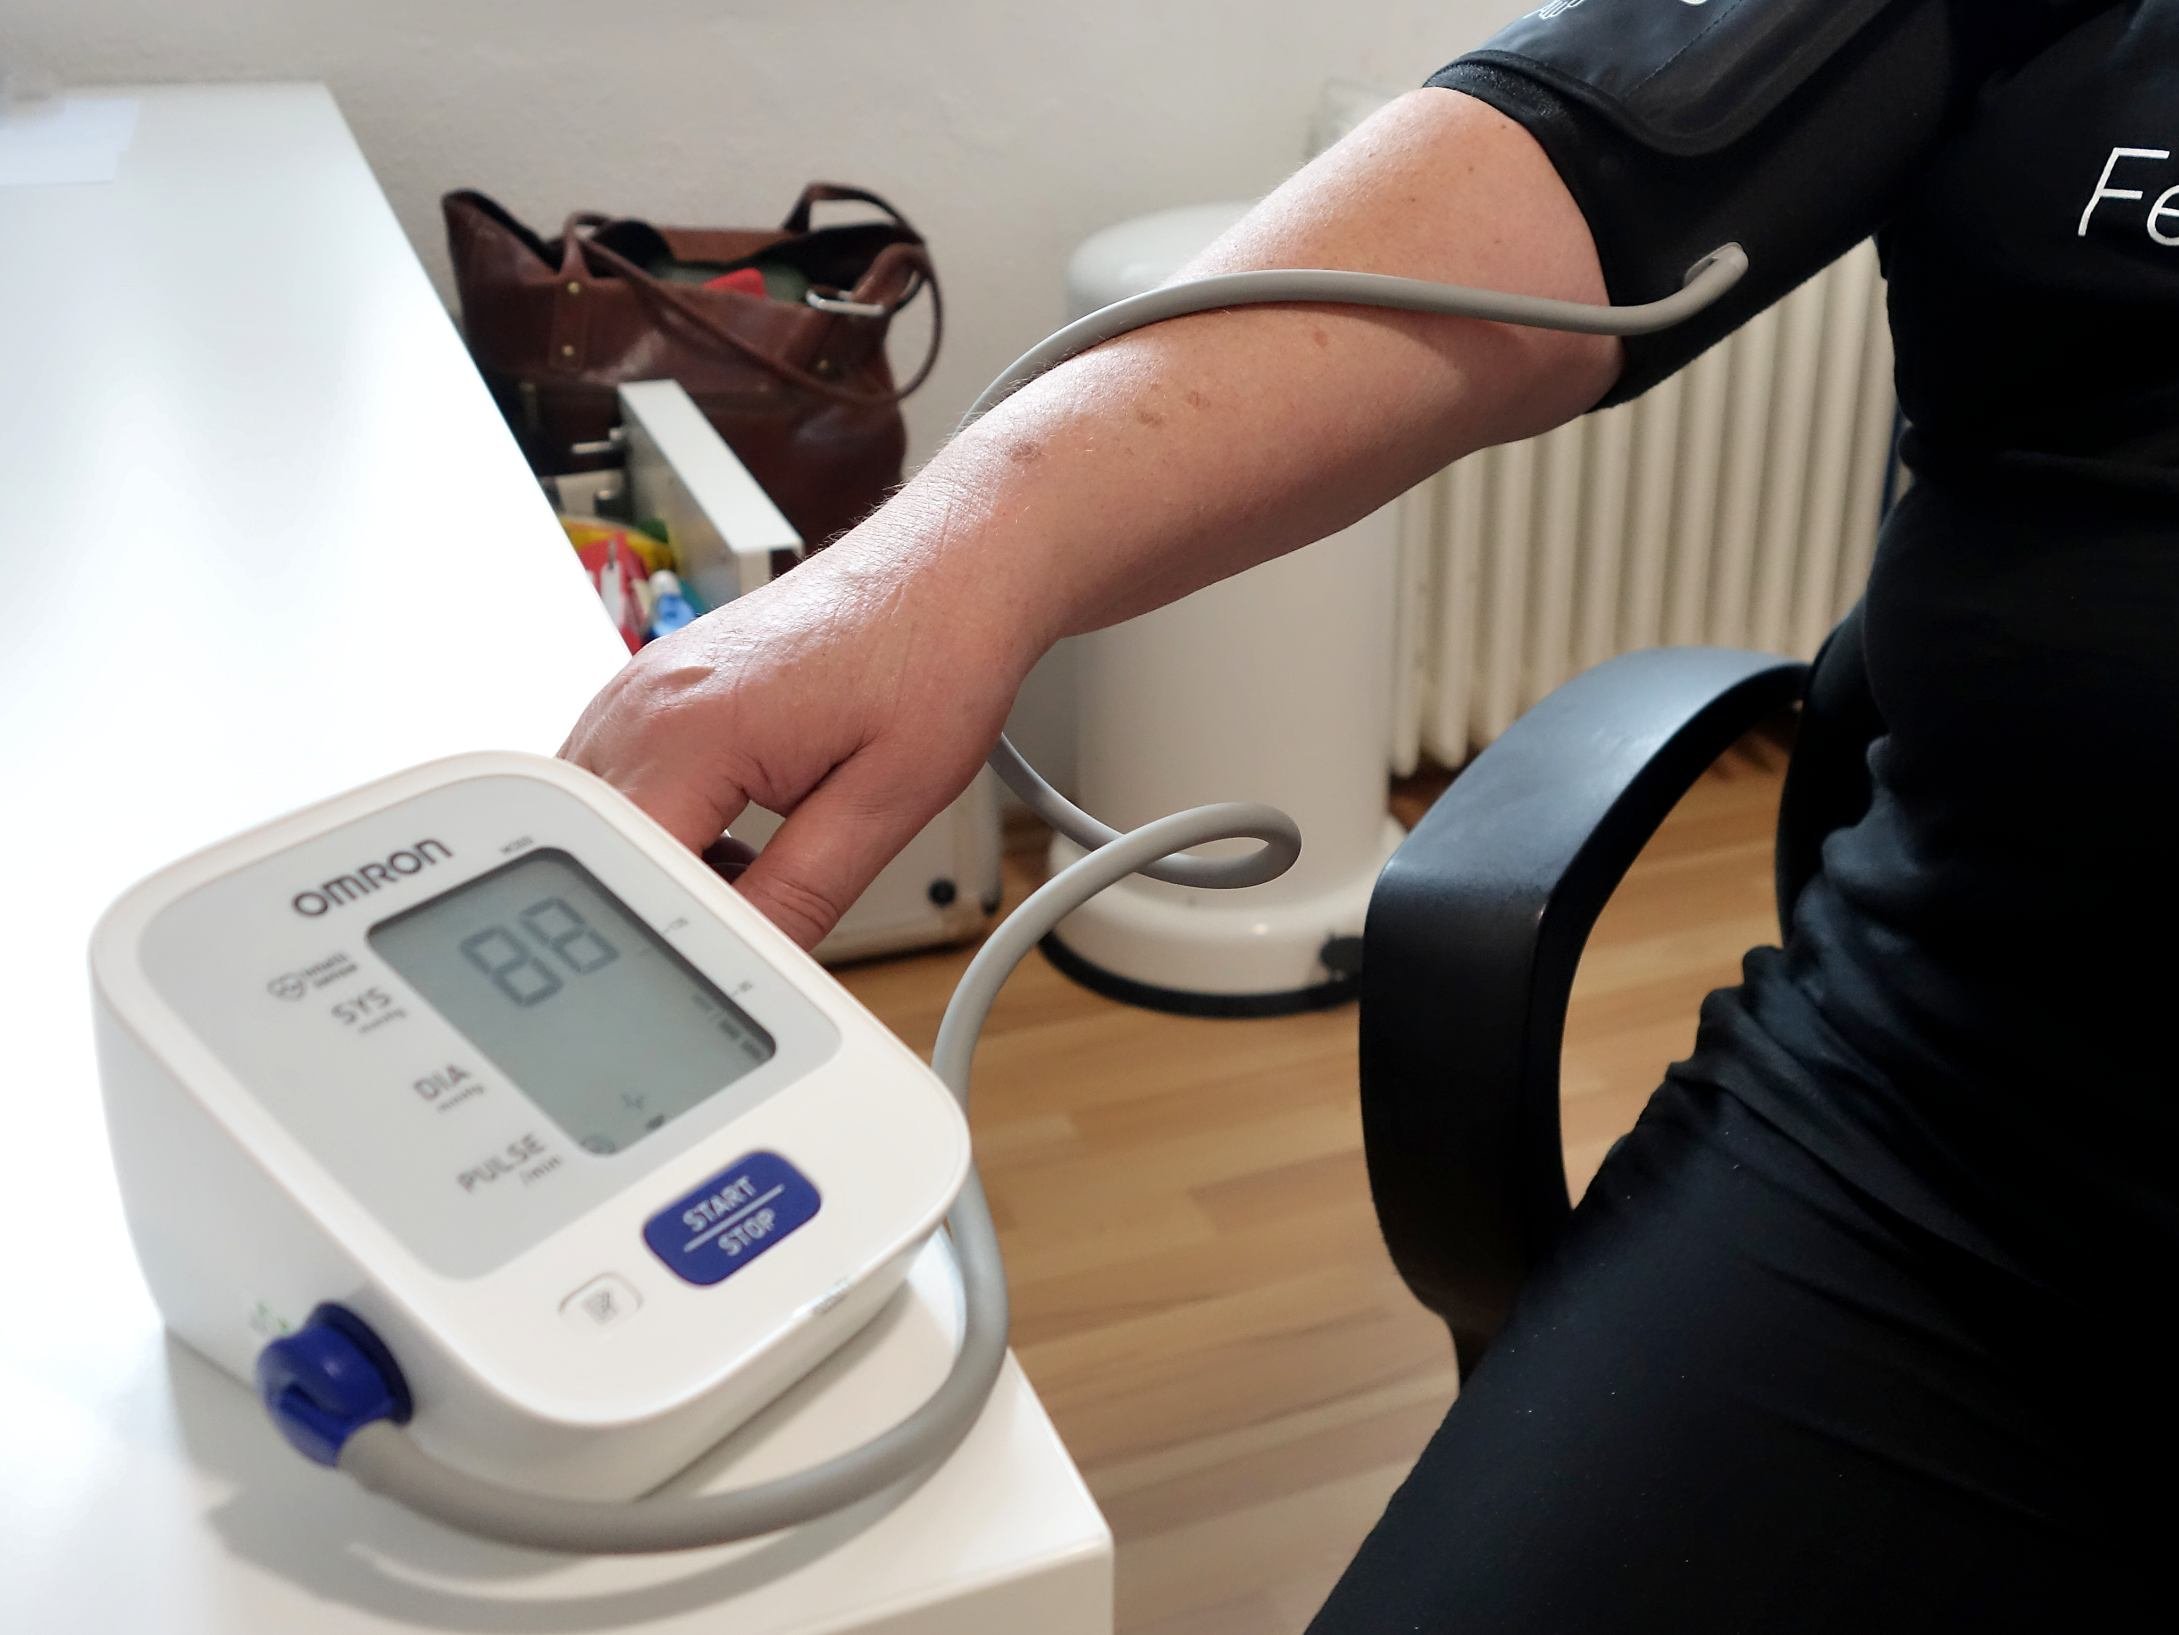 Elektronisches Blutdruck-Messgerät im Vordergrund - dahinter ein Arm mit Manschette